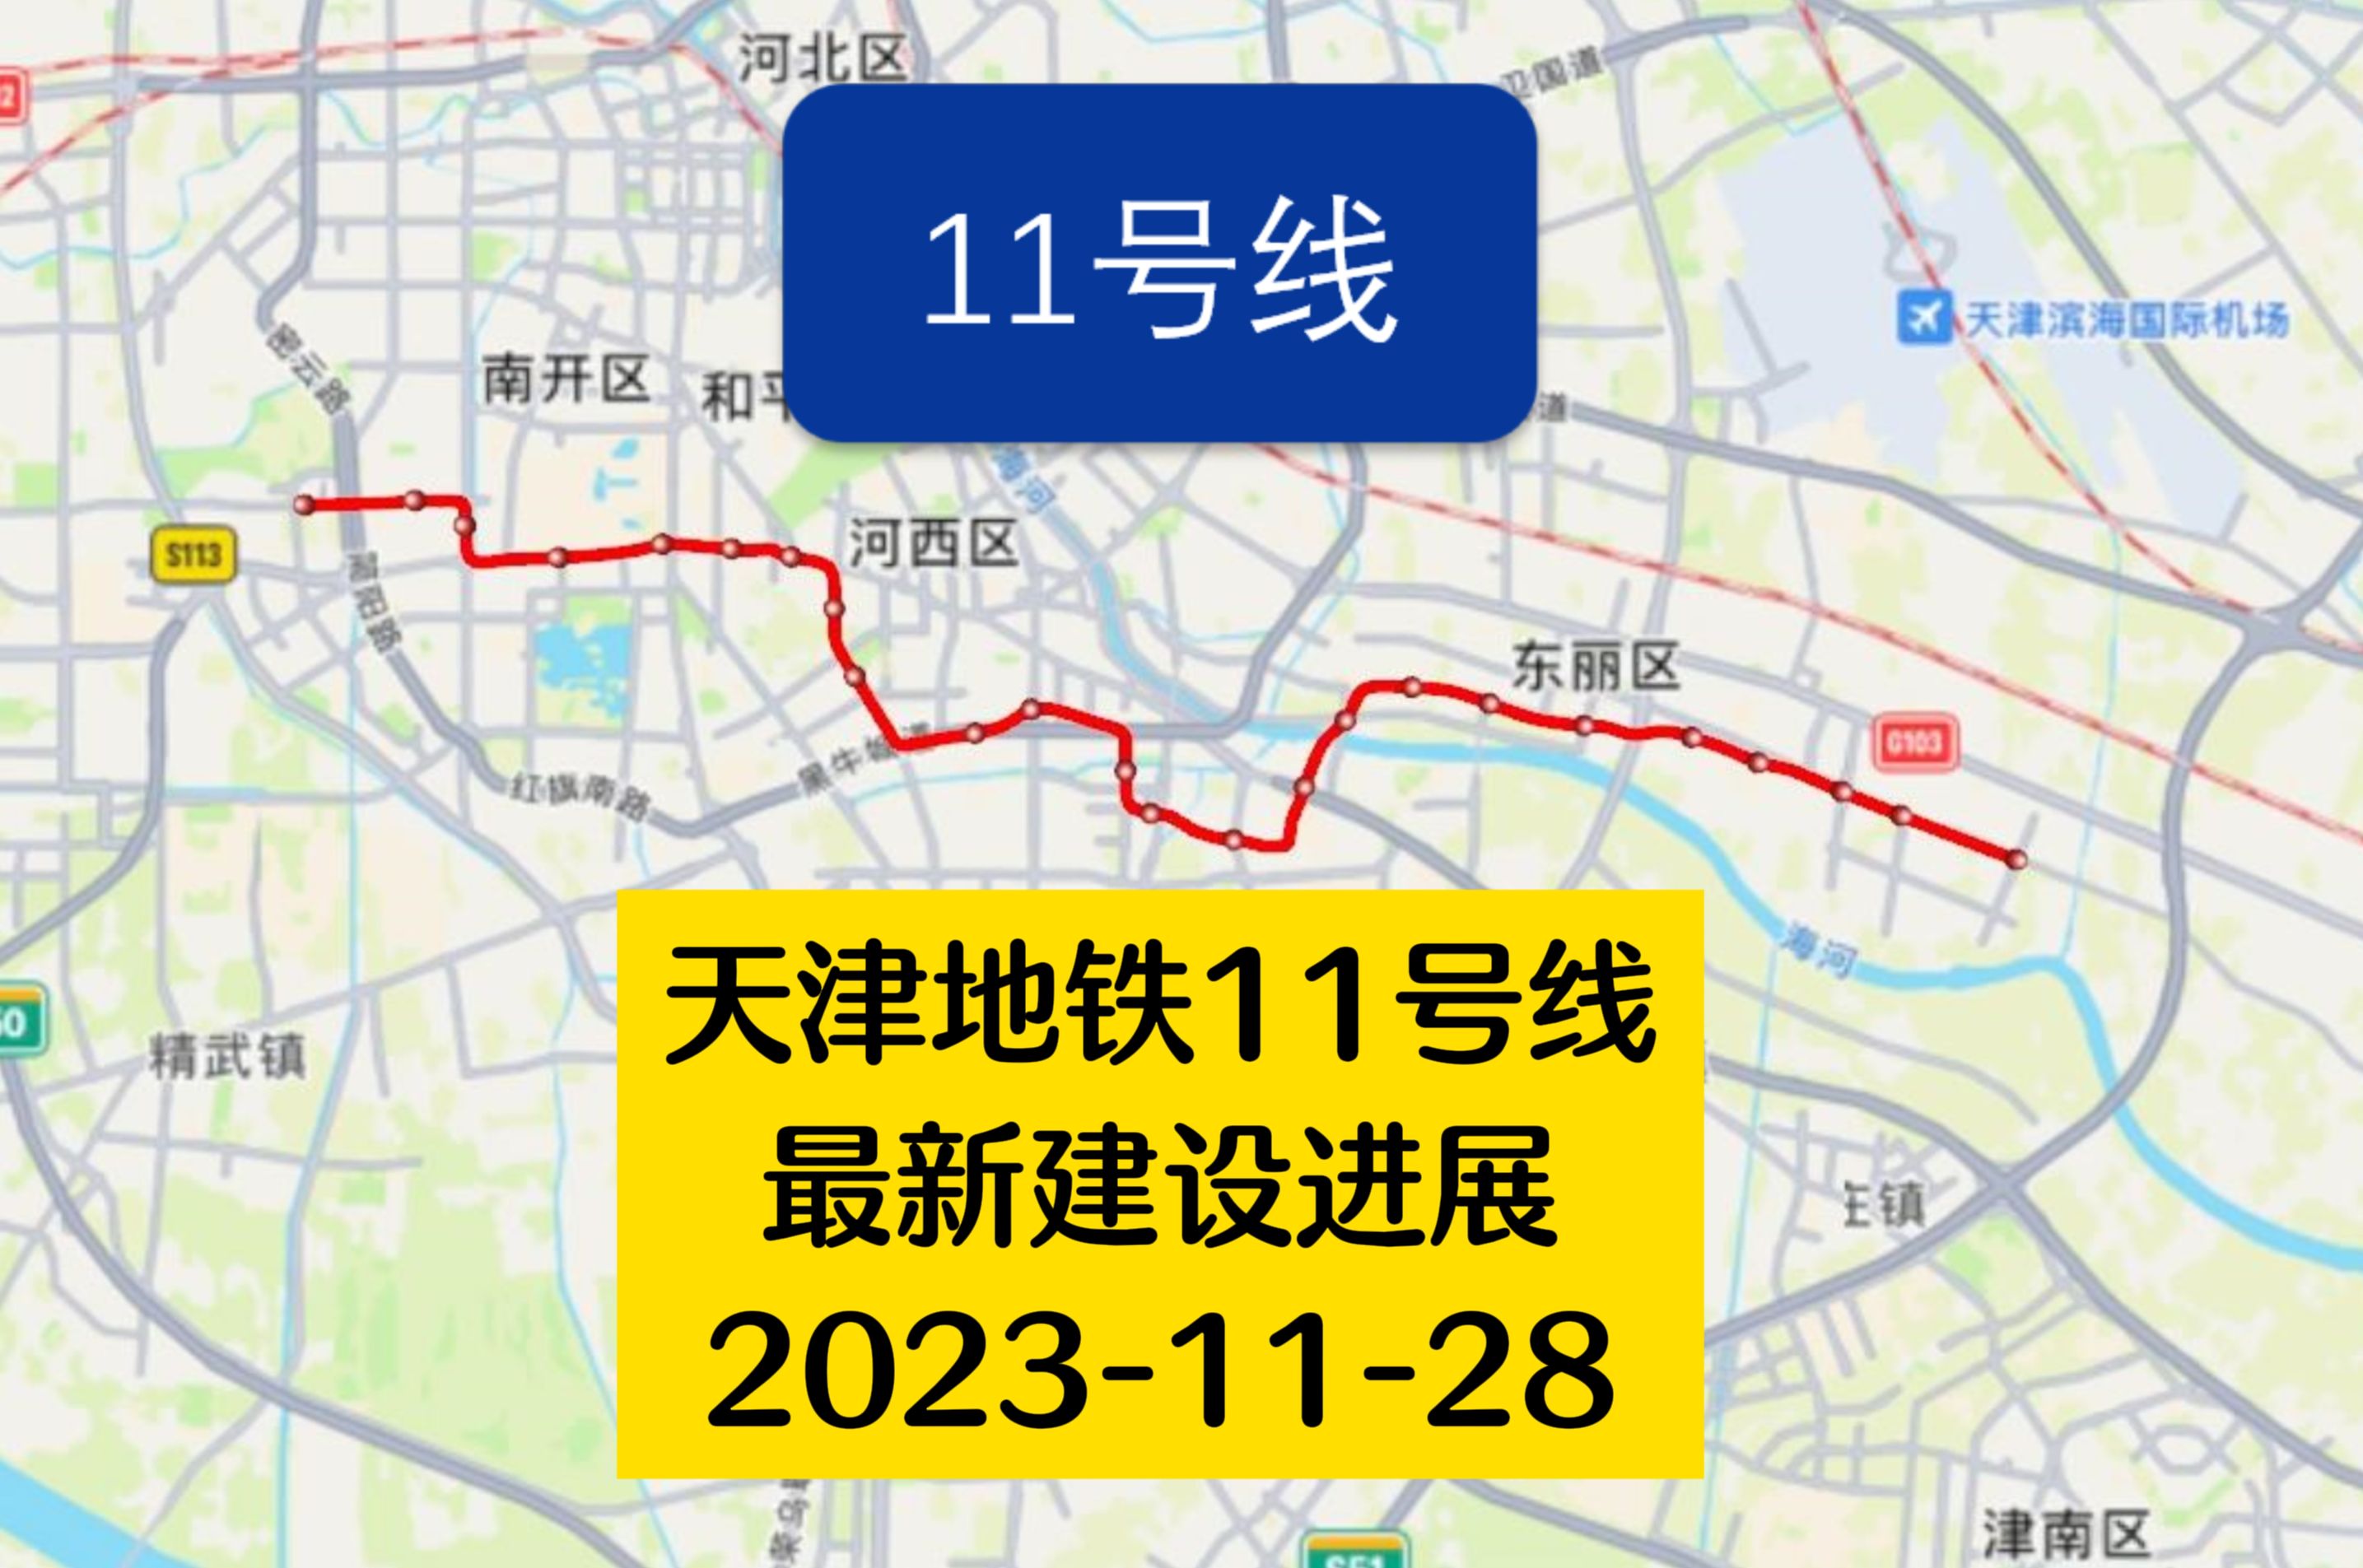 天津地铁11号线最新建设进展!西段多个区段洞通!